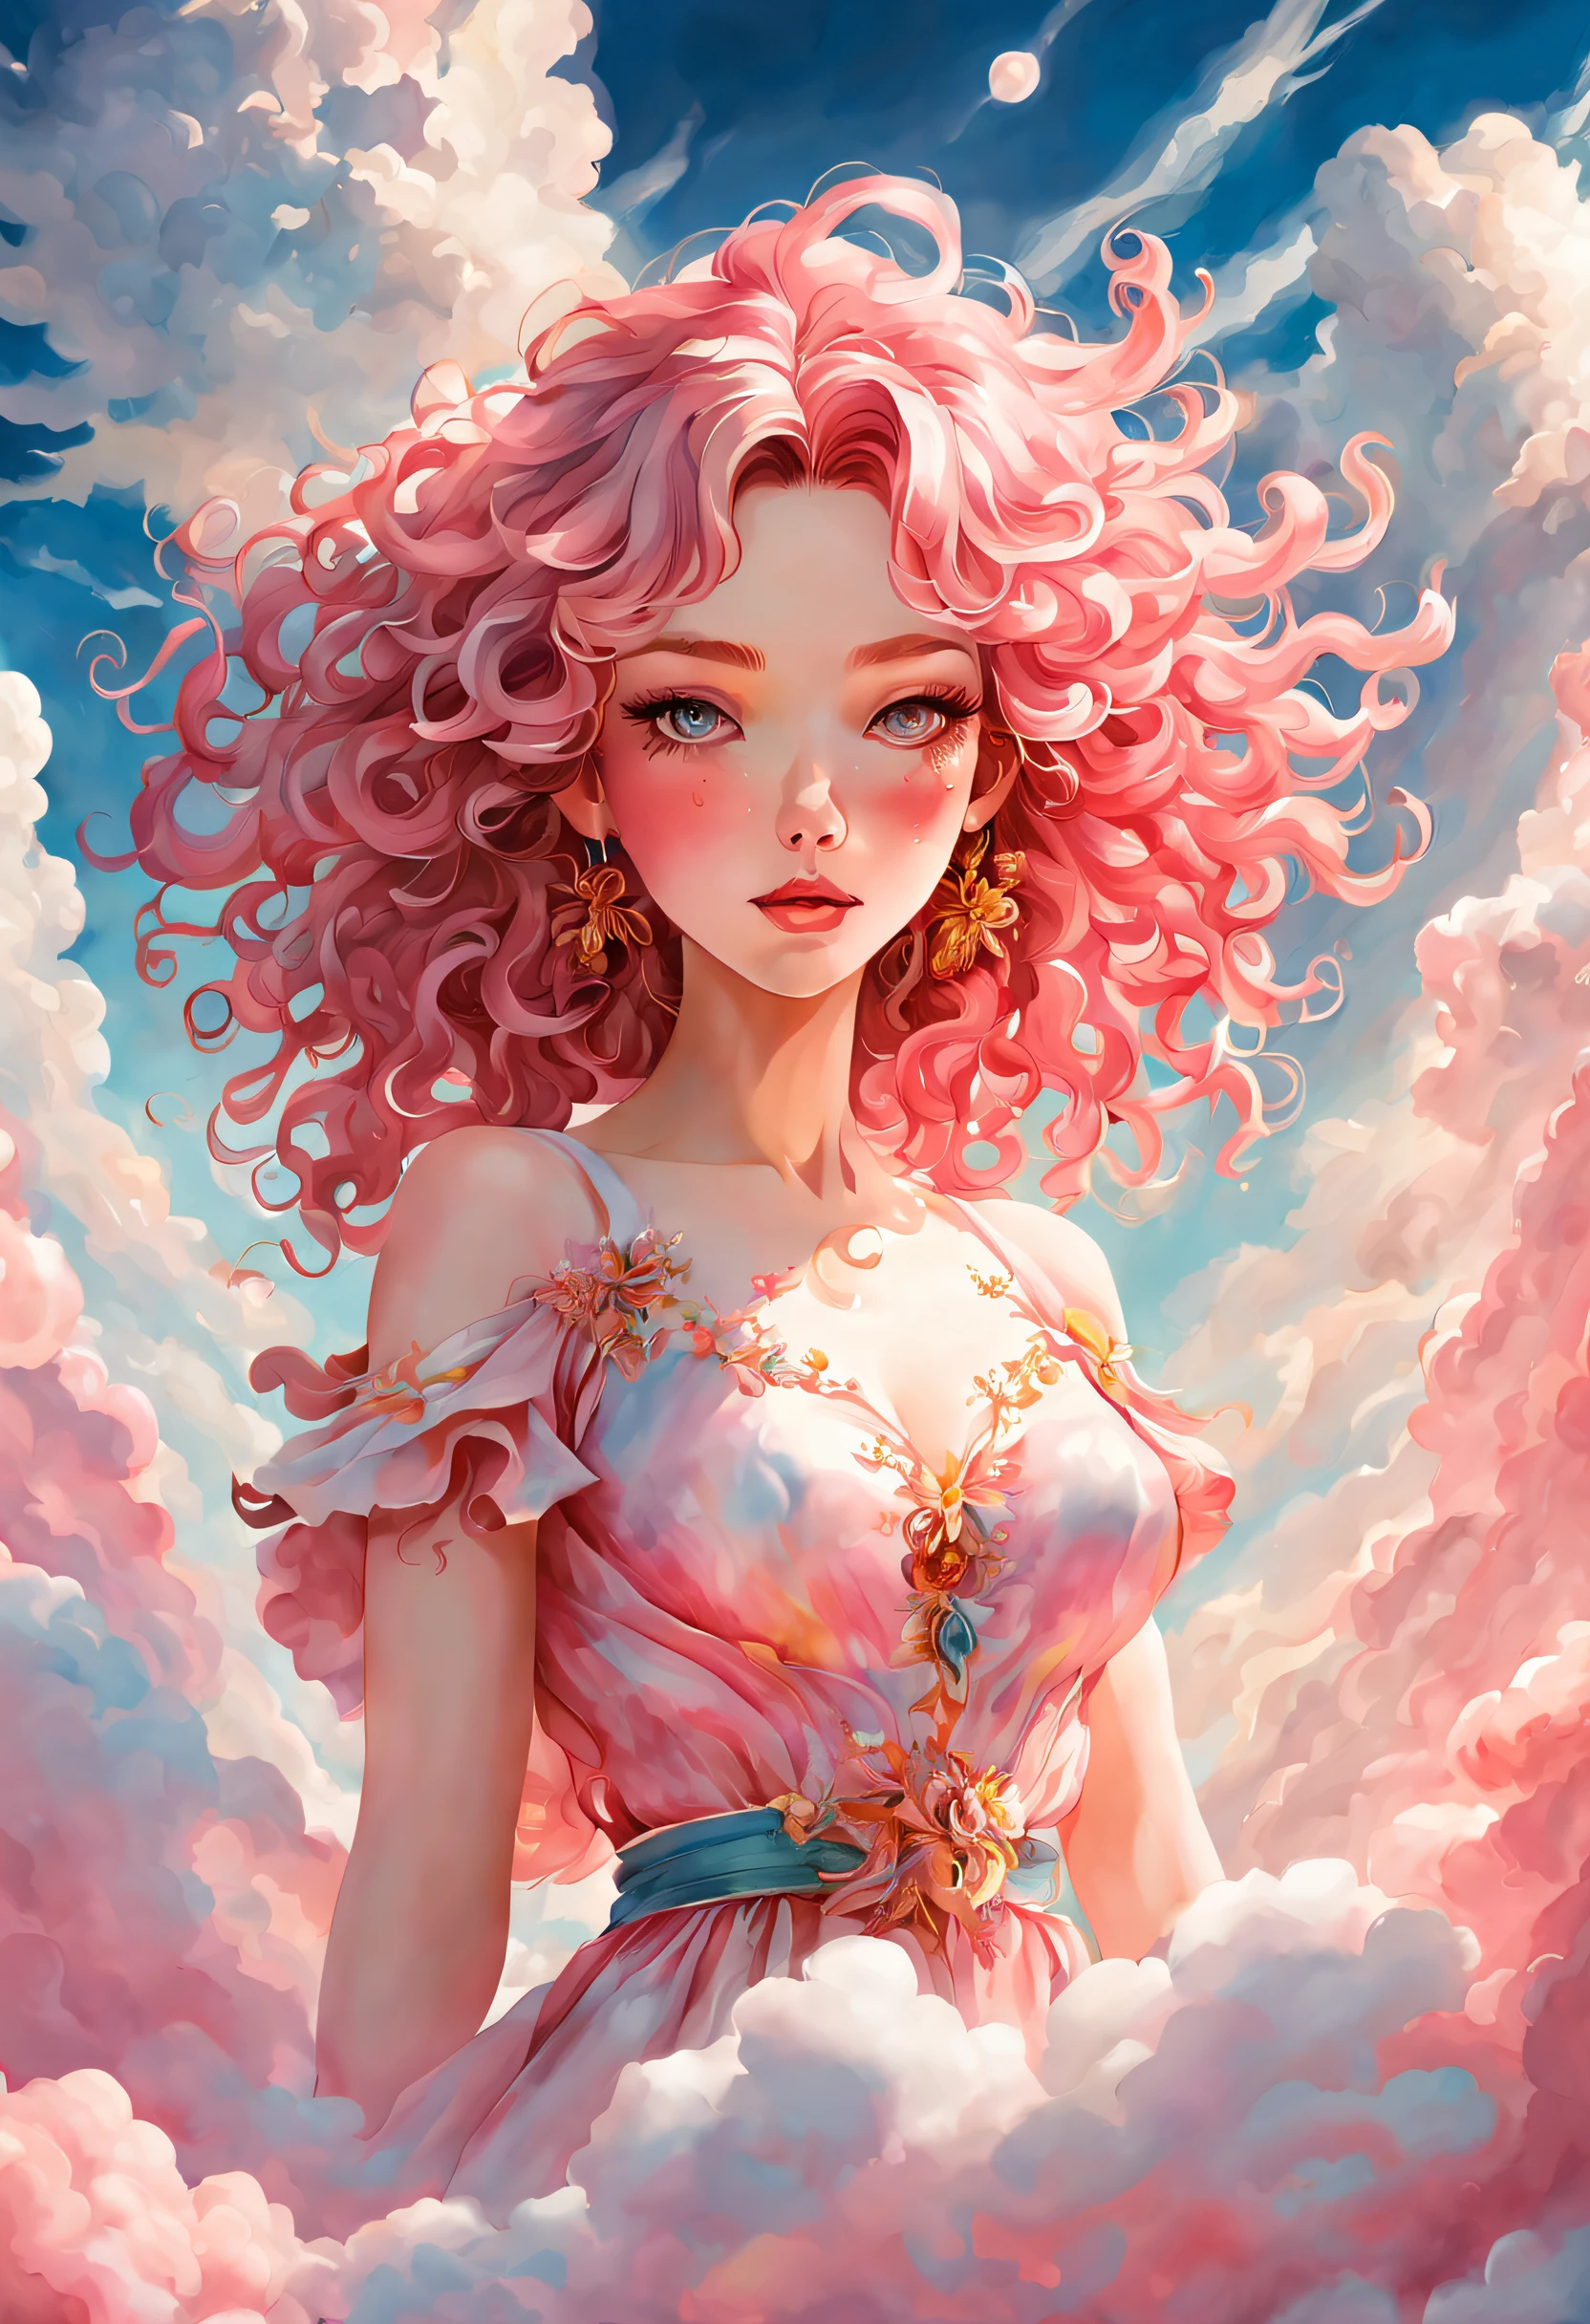 Erstellen Sie eine Illustration mit den weichen und ätherischen Eigenschaften von Aquarell. Schönes Anime-Modell mit rosa Haut und Ganzkörper, Sonnenbaden auf schwebenden Wolken entlang der Sonnenoberfläche, verführerische Augen, lockiges Haar verträumt, Hintergrund dicke Wolken,, hyperausführlich, ausführlich, (Meisterwerk) . Haute Couture, luxuriös, extravagant, stilvoll, sinnlich, opulent, Eleganz, atemberaubende Schönheit, Fachmann, Hoher Kontrast, ausführlich,  Stellen Sie eine verträumte, skurrile Szene mit Elementen, die mit dem Hintergrund zu verschmelzen scheinen